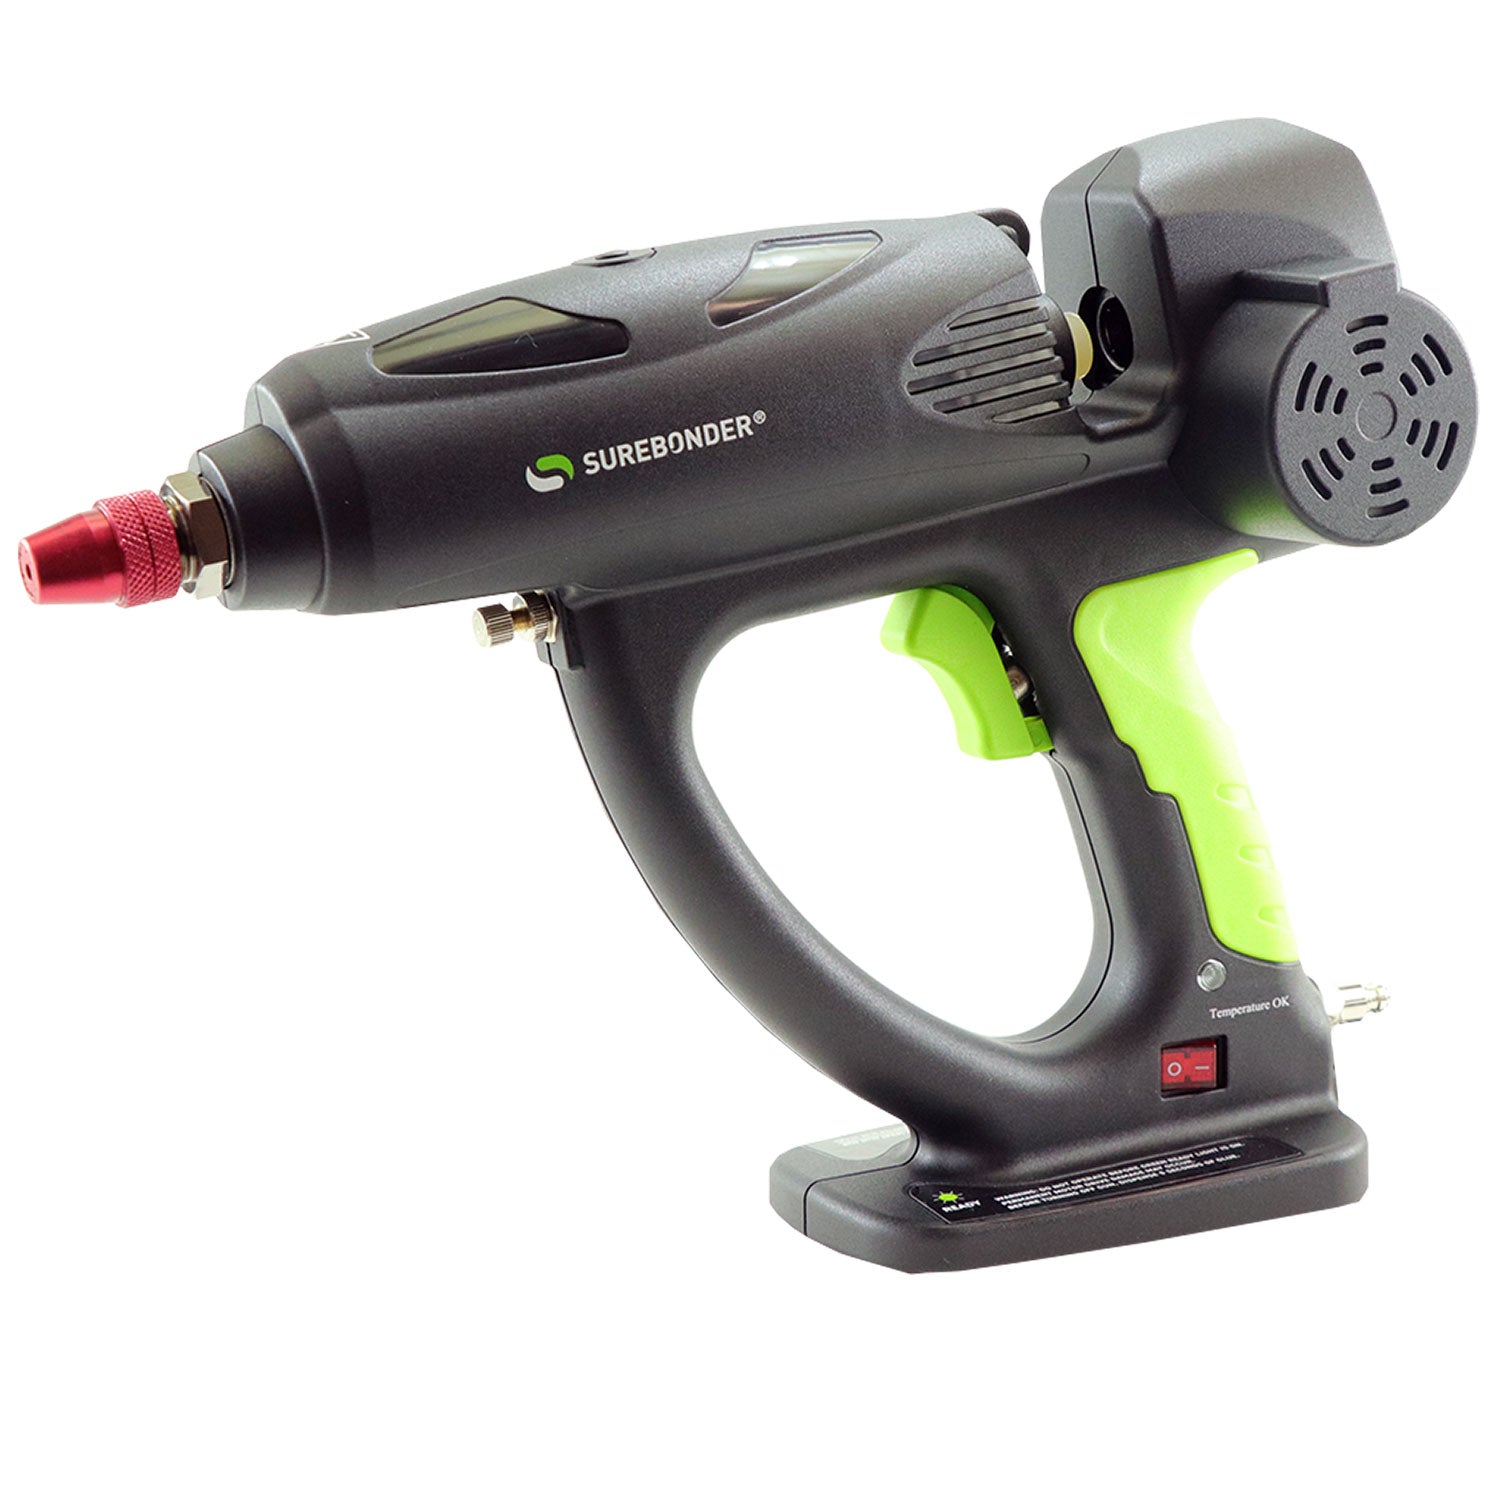 Surebonder Spray-500 500 Watt Hot Melt Spray Glue Gun - Uses oversize, 5/8" glue sticks